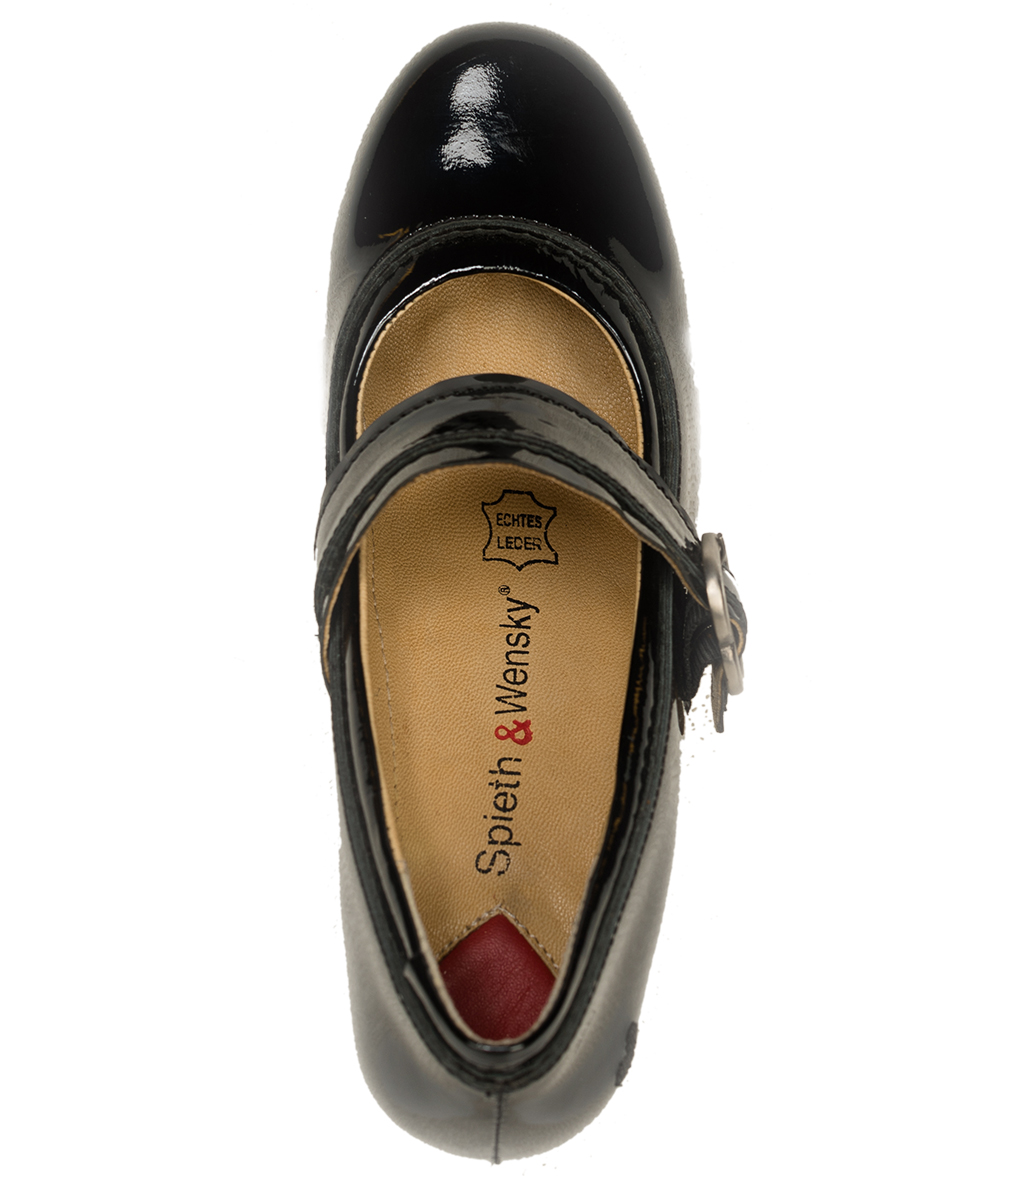 weitere Bilder von Traditional dirndl shoes D450 Ibis Lack black